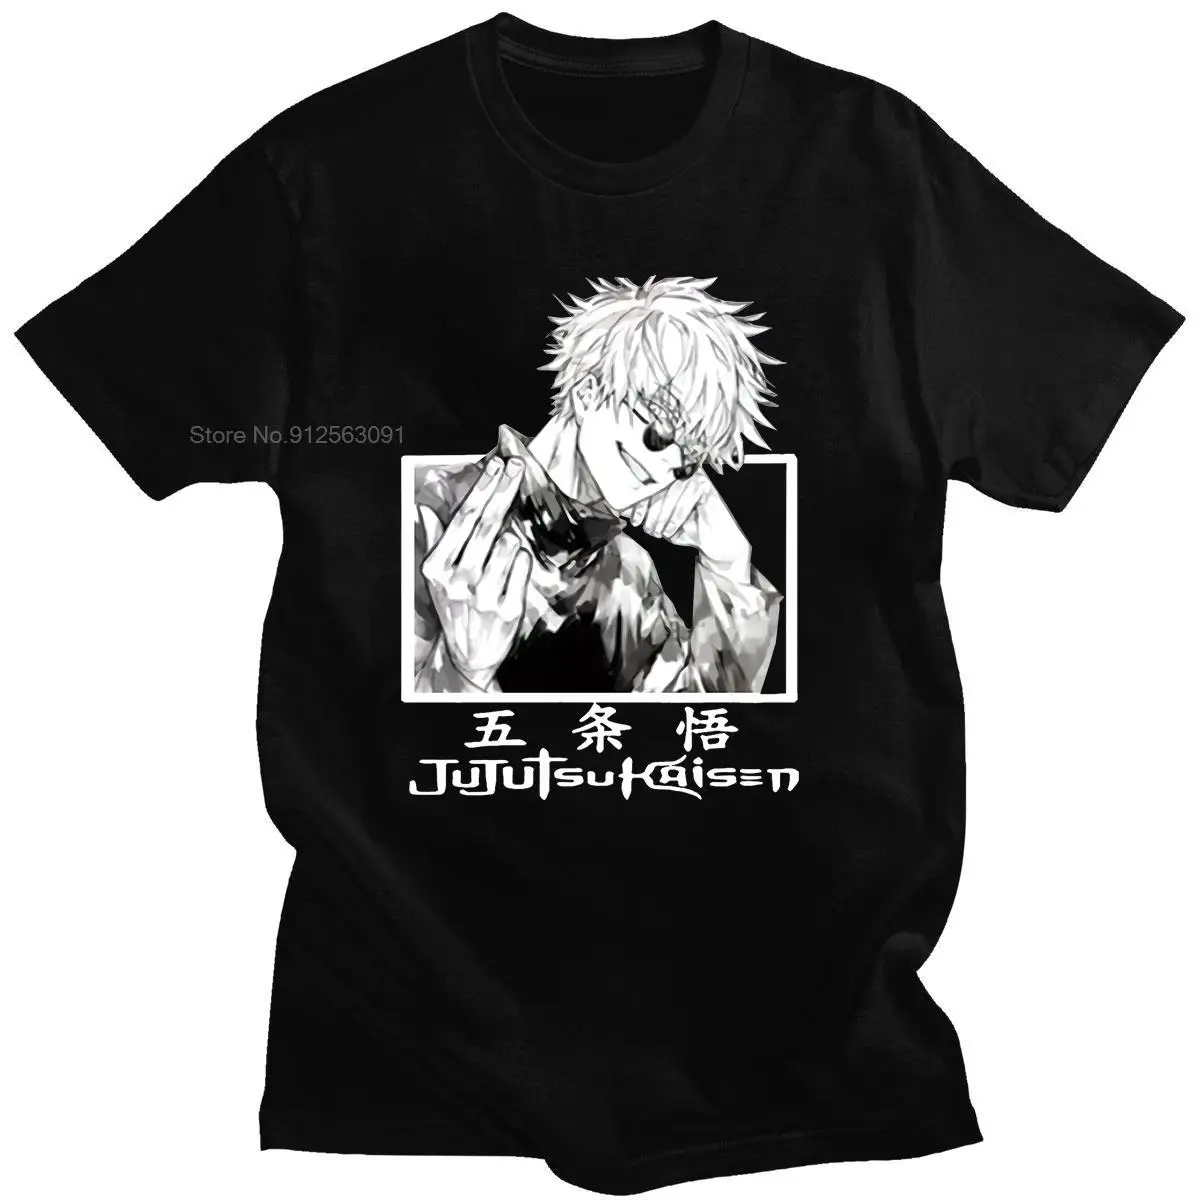 

Hot Sale Jujutsu Kaisen Fashion T-Shirt Printed High Quality Casual Tshirt Comfortable Hip-pop Four Seasons Streetwears